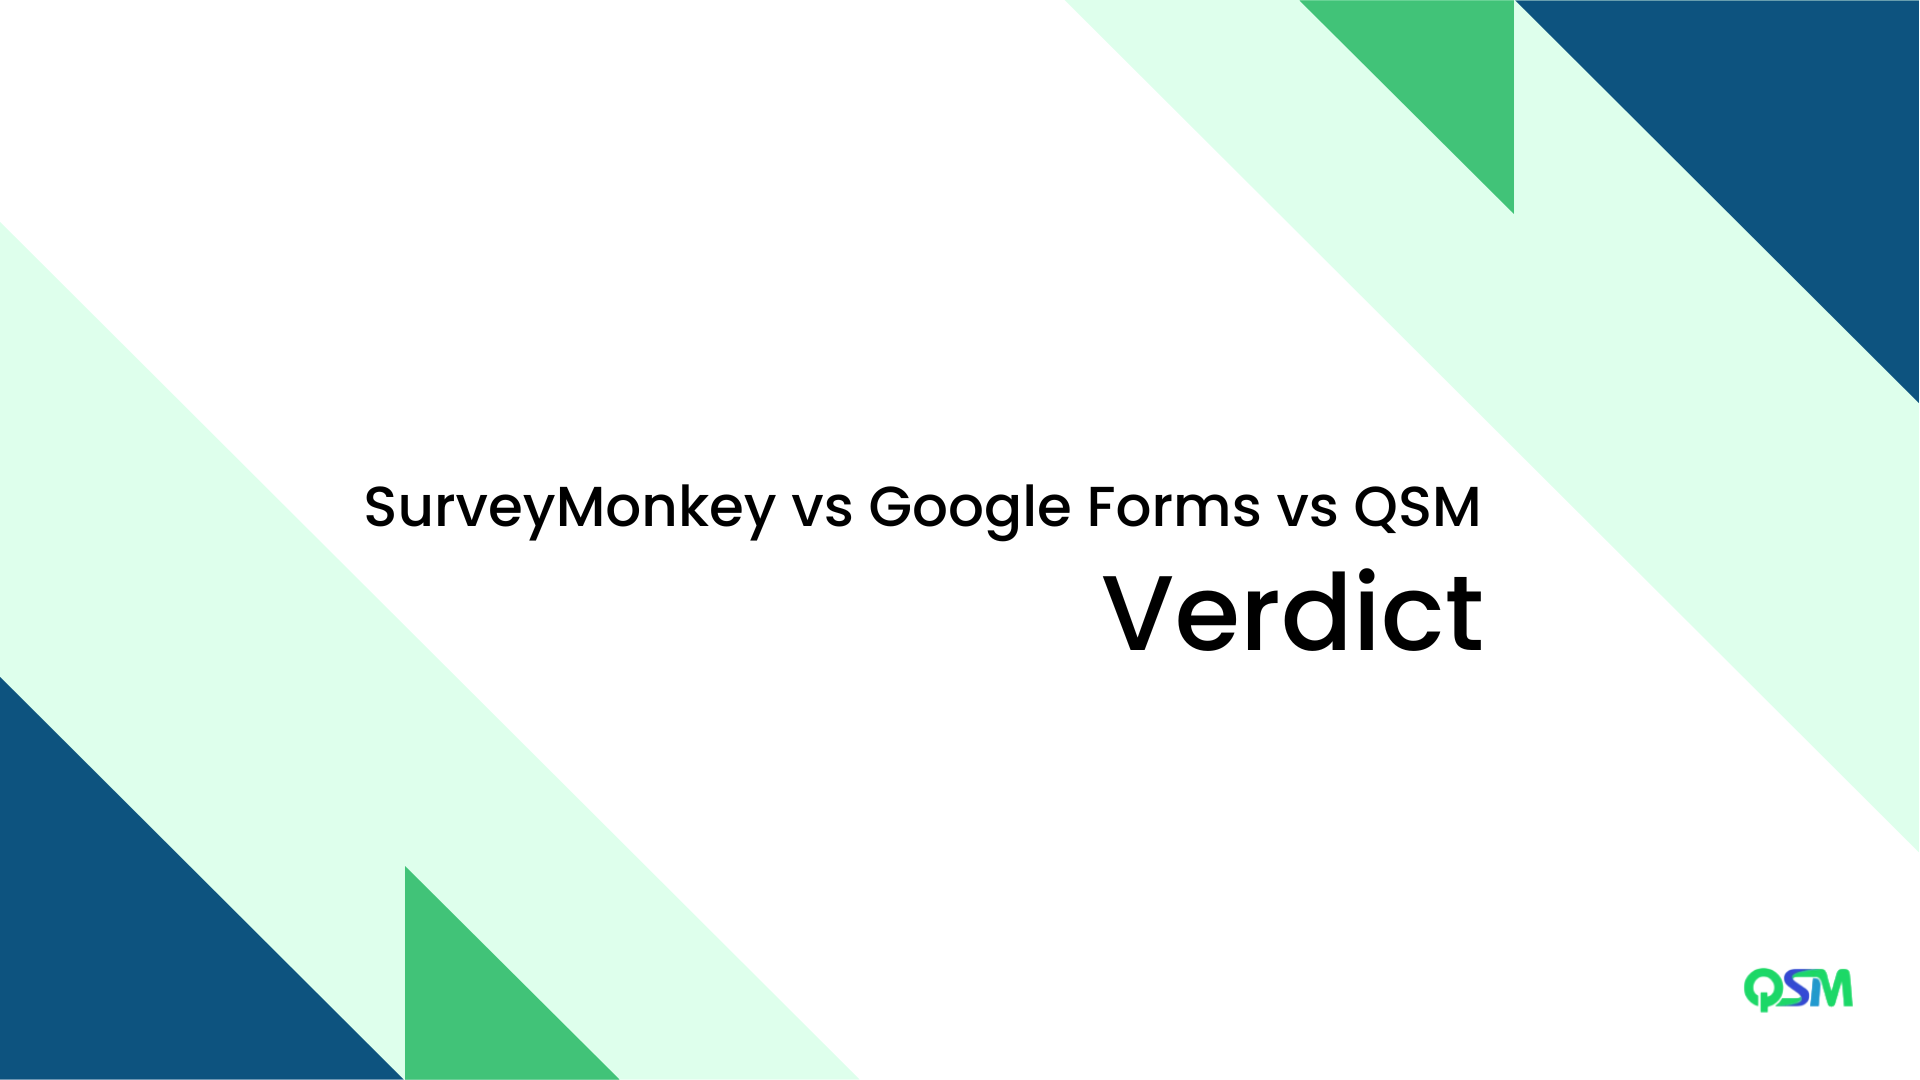 The Verdict: Survey Monkey vs Google Forms vs QSM